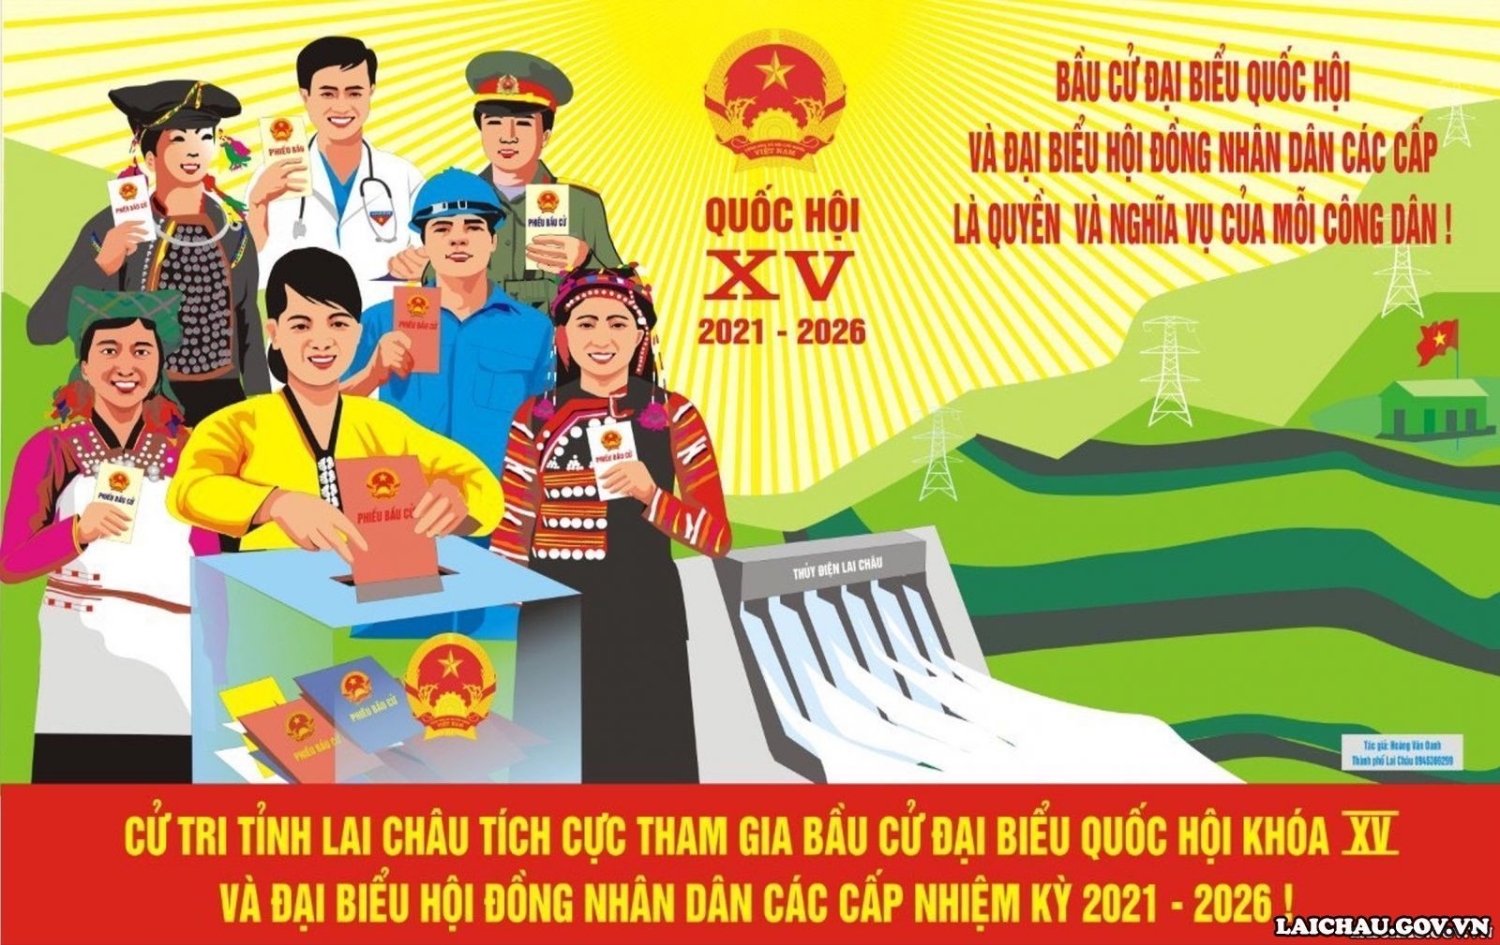 Lai Châu: Công bố danh sách chính thức những người ứng cử đại biểu HĐND tỉnh Lai Châu nhiệm kỳ 2021-2026